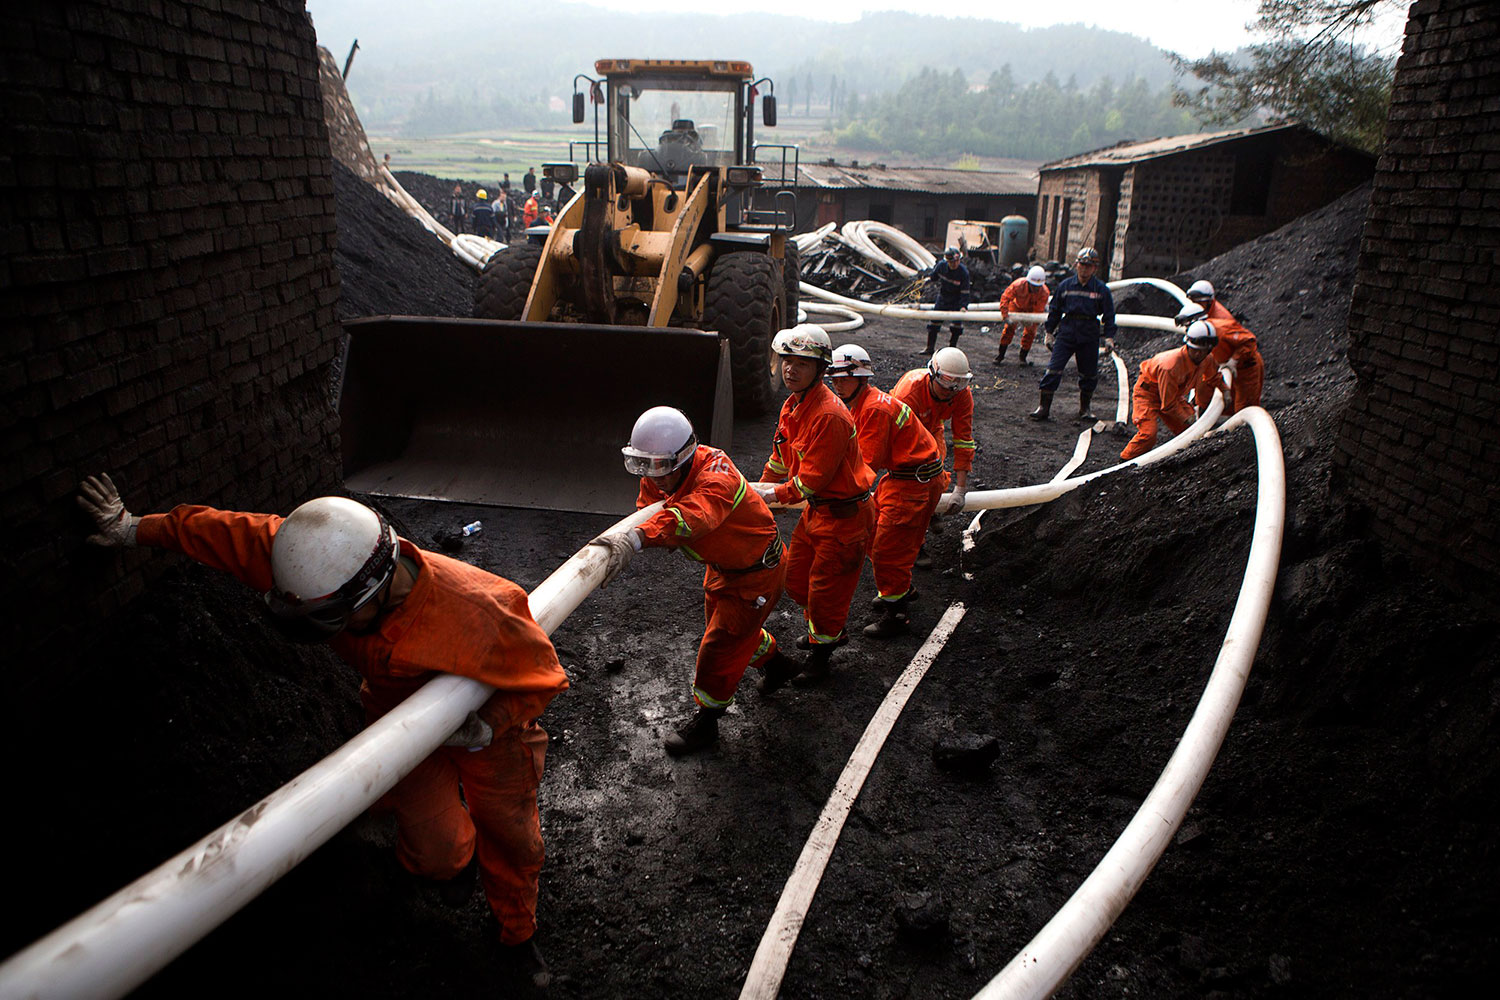 22 mineros atrapados en una mina de carbón inundada en China